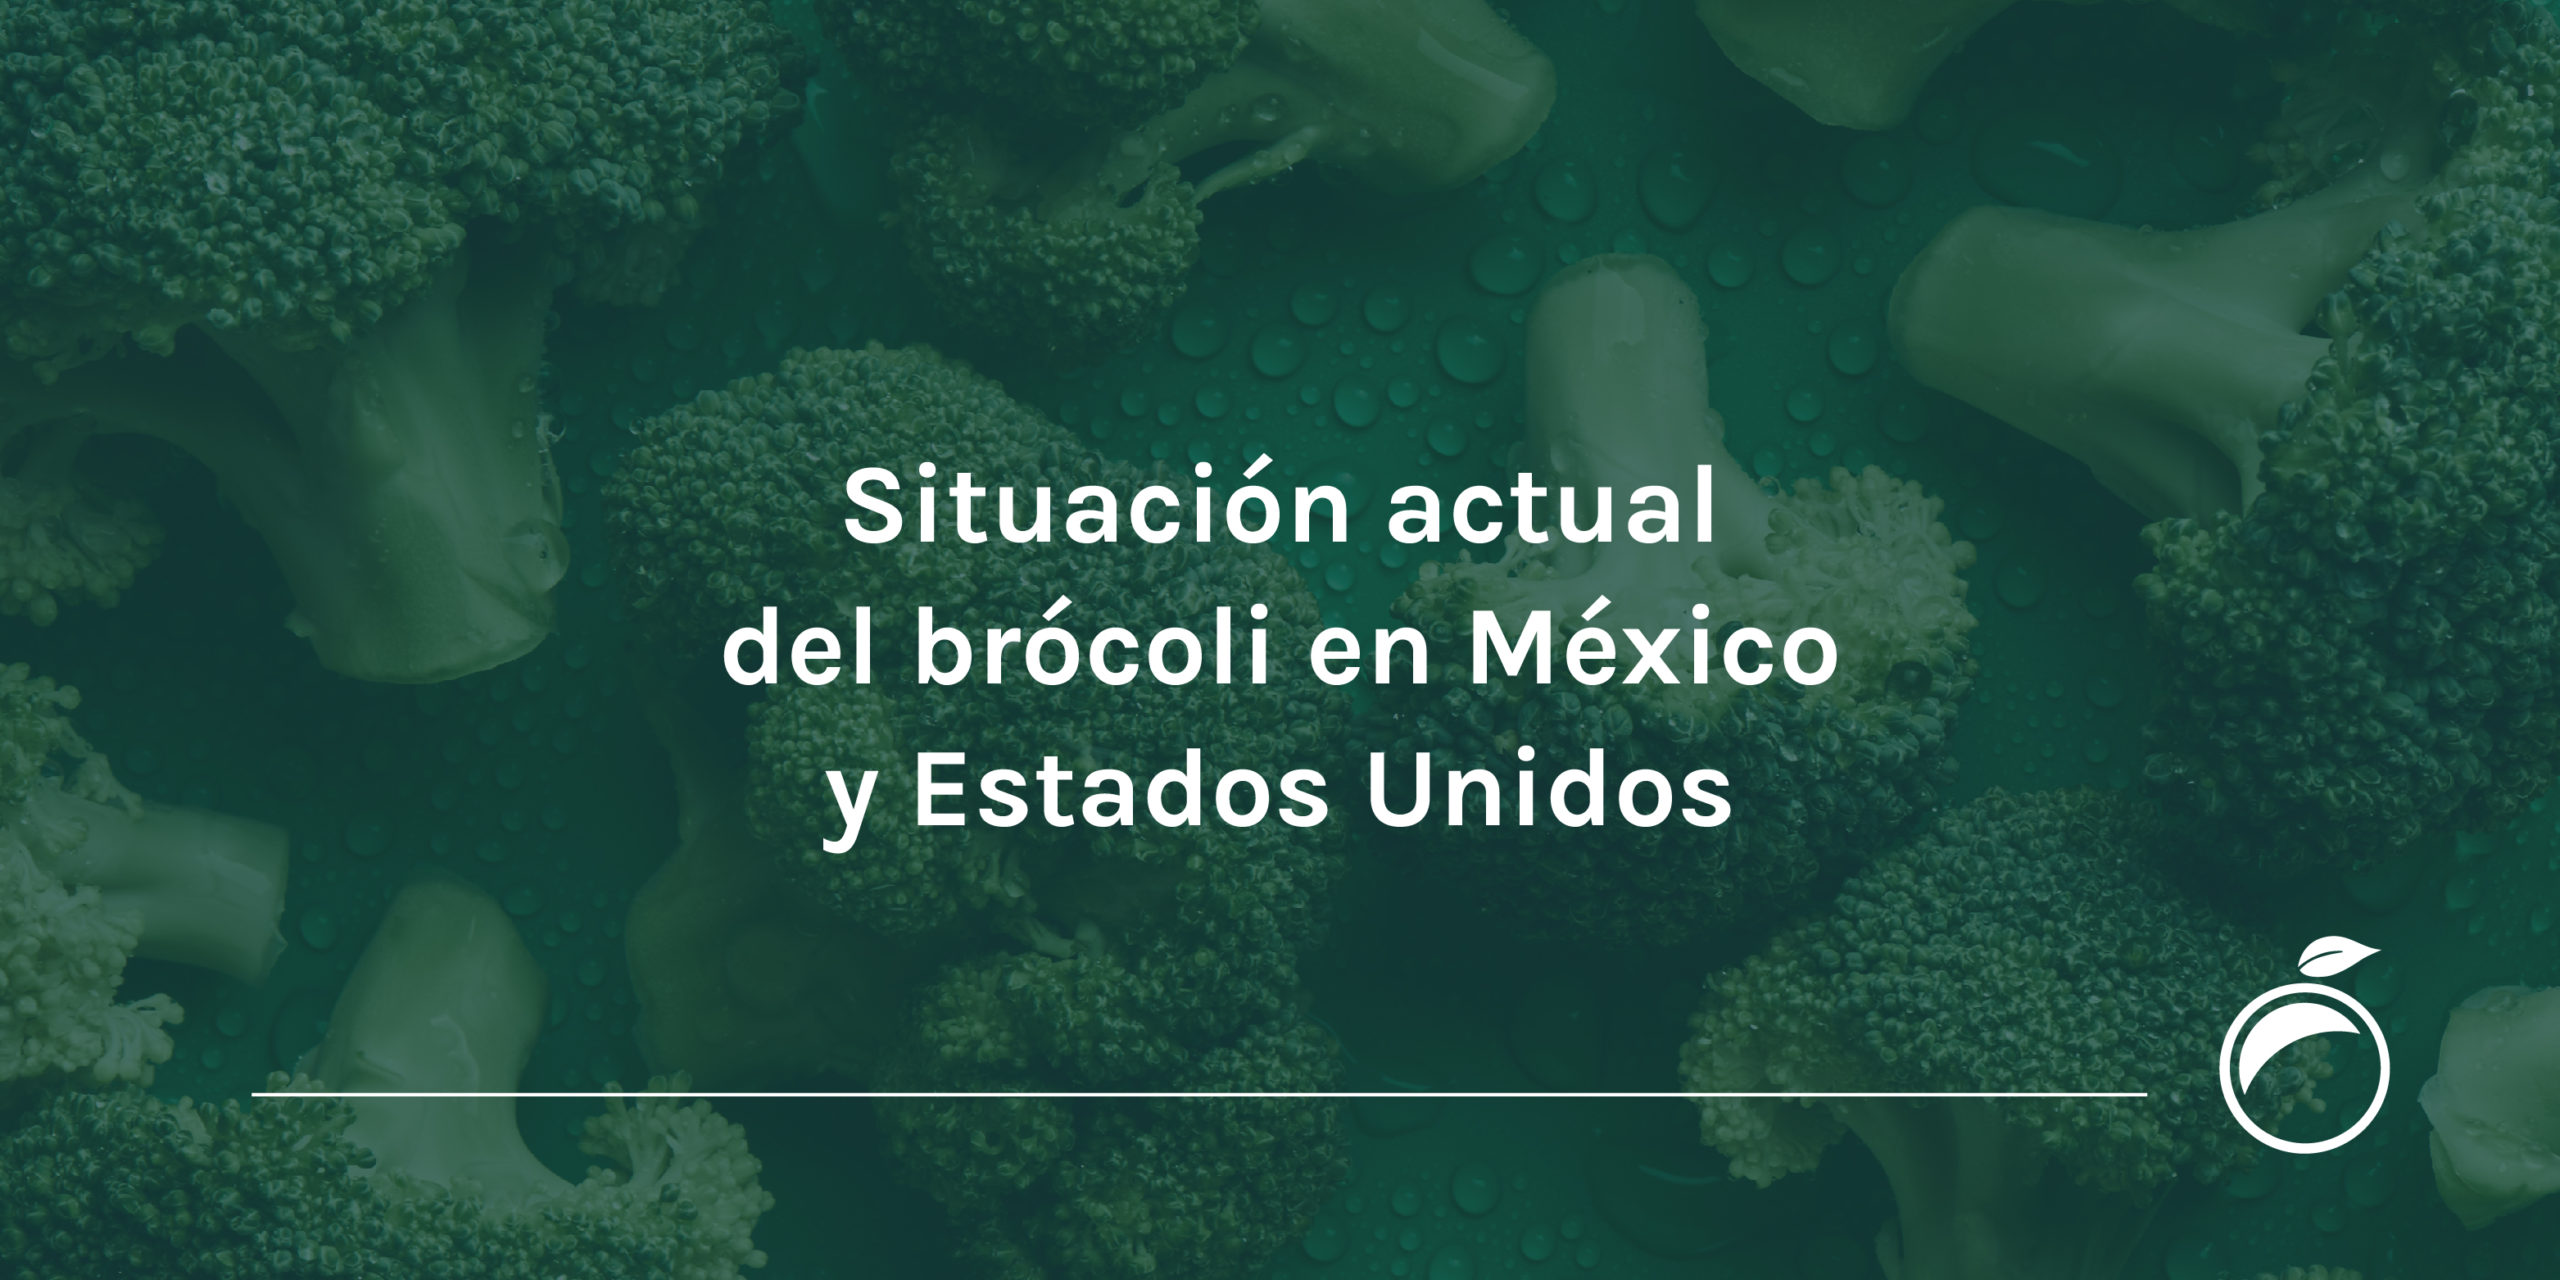 Situación actual del brócoli en México y Estados Unidos